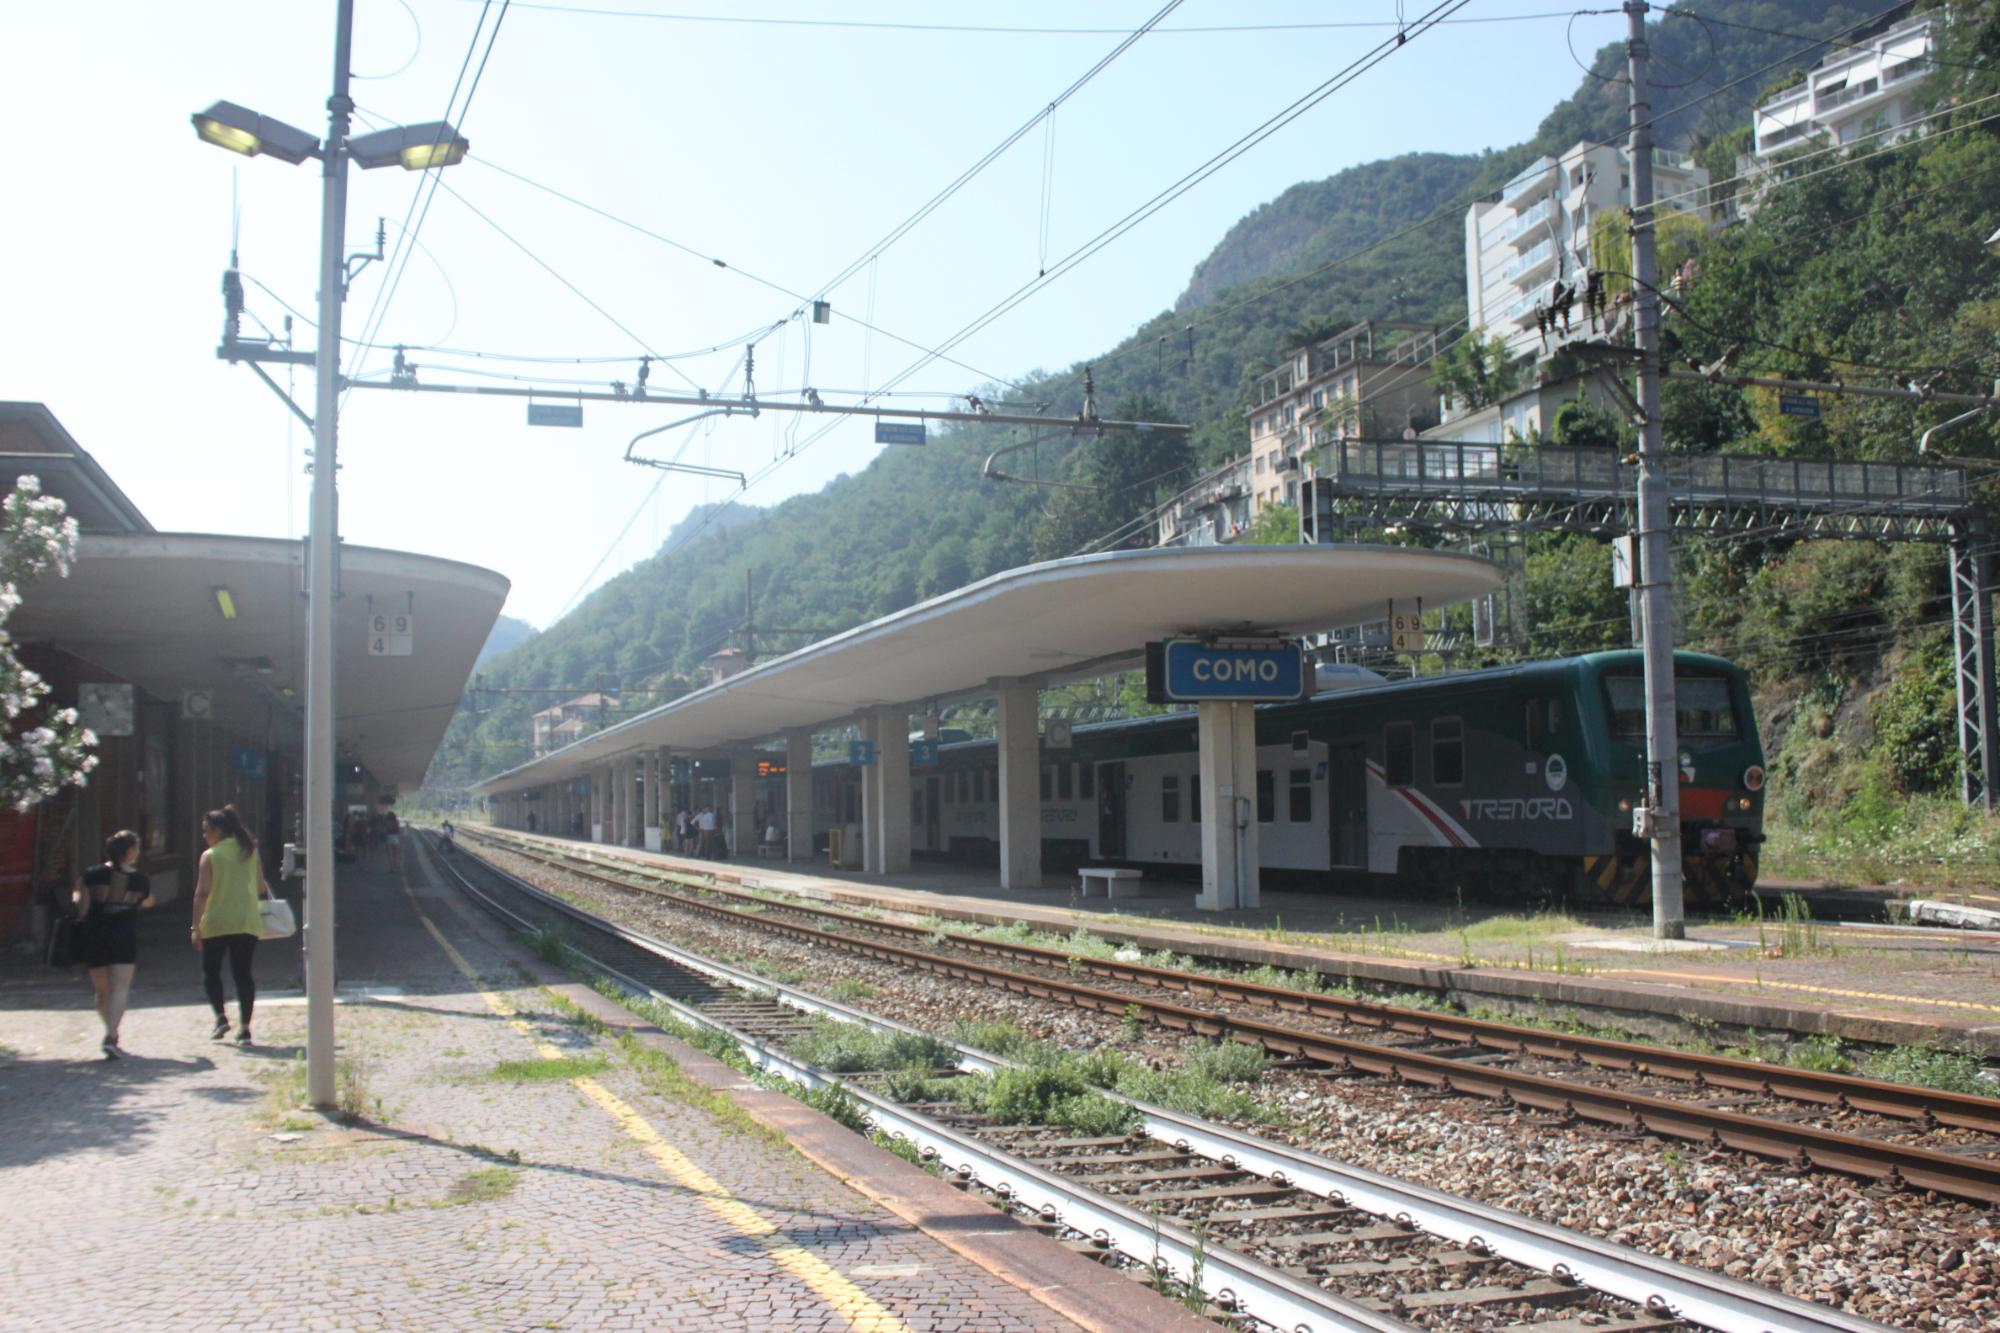 Stazione ferroviaria Como San Giovanni